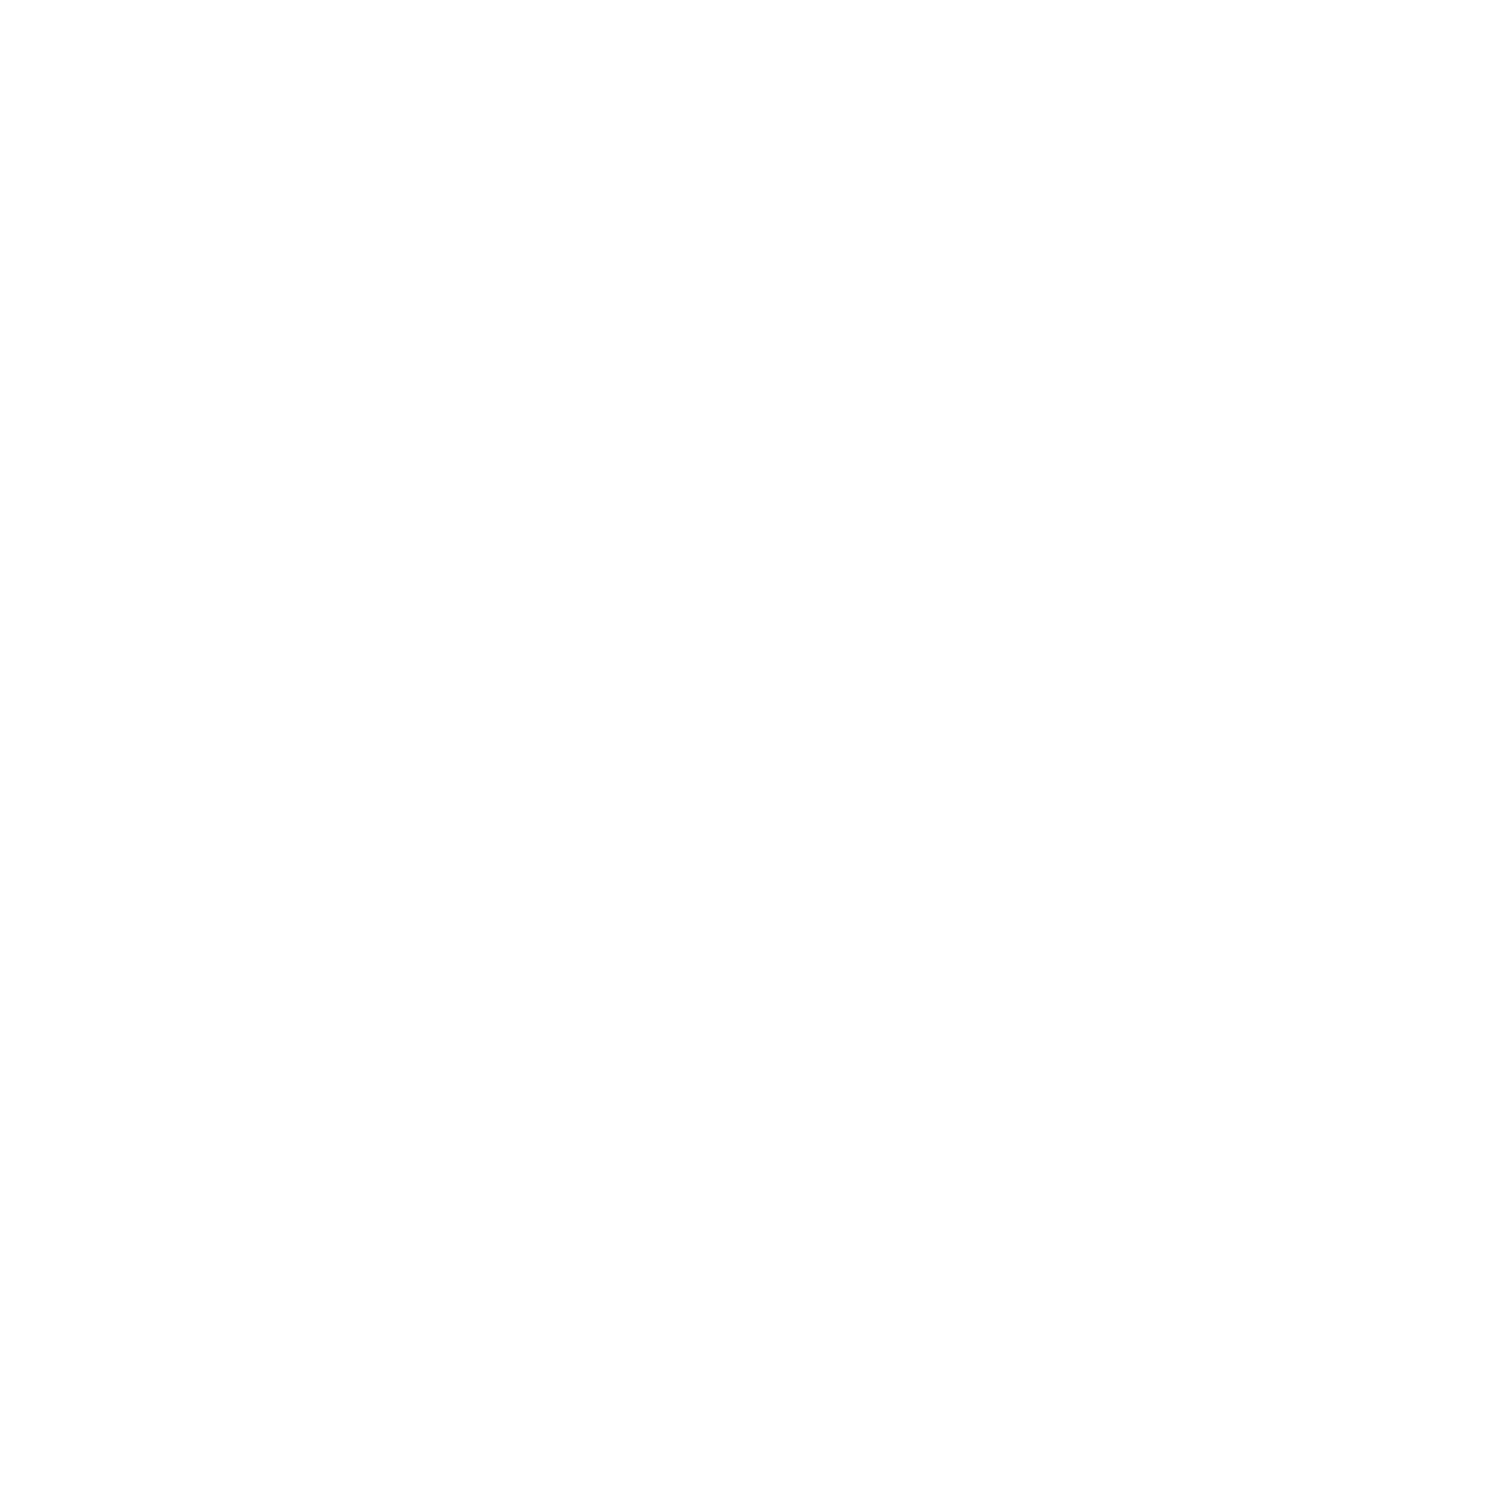 MEP Florida